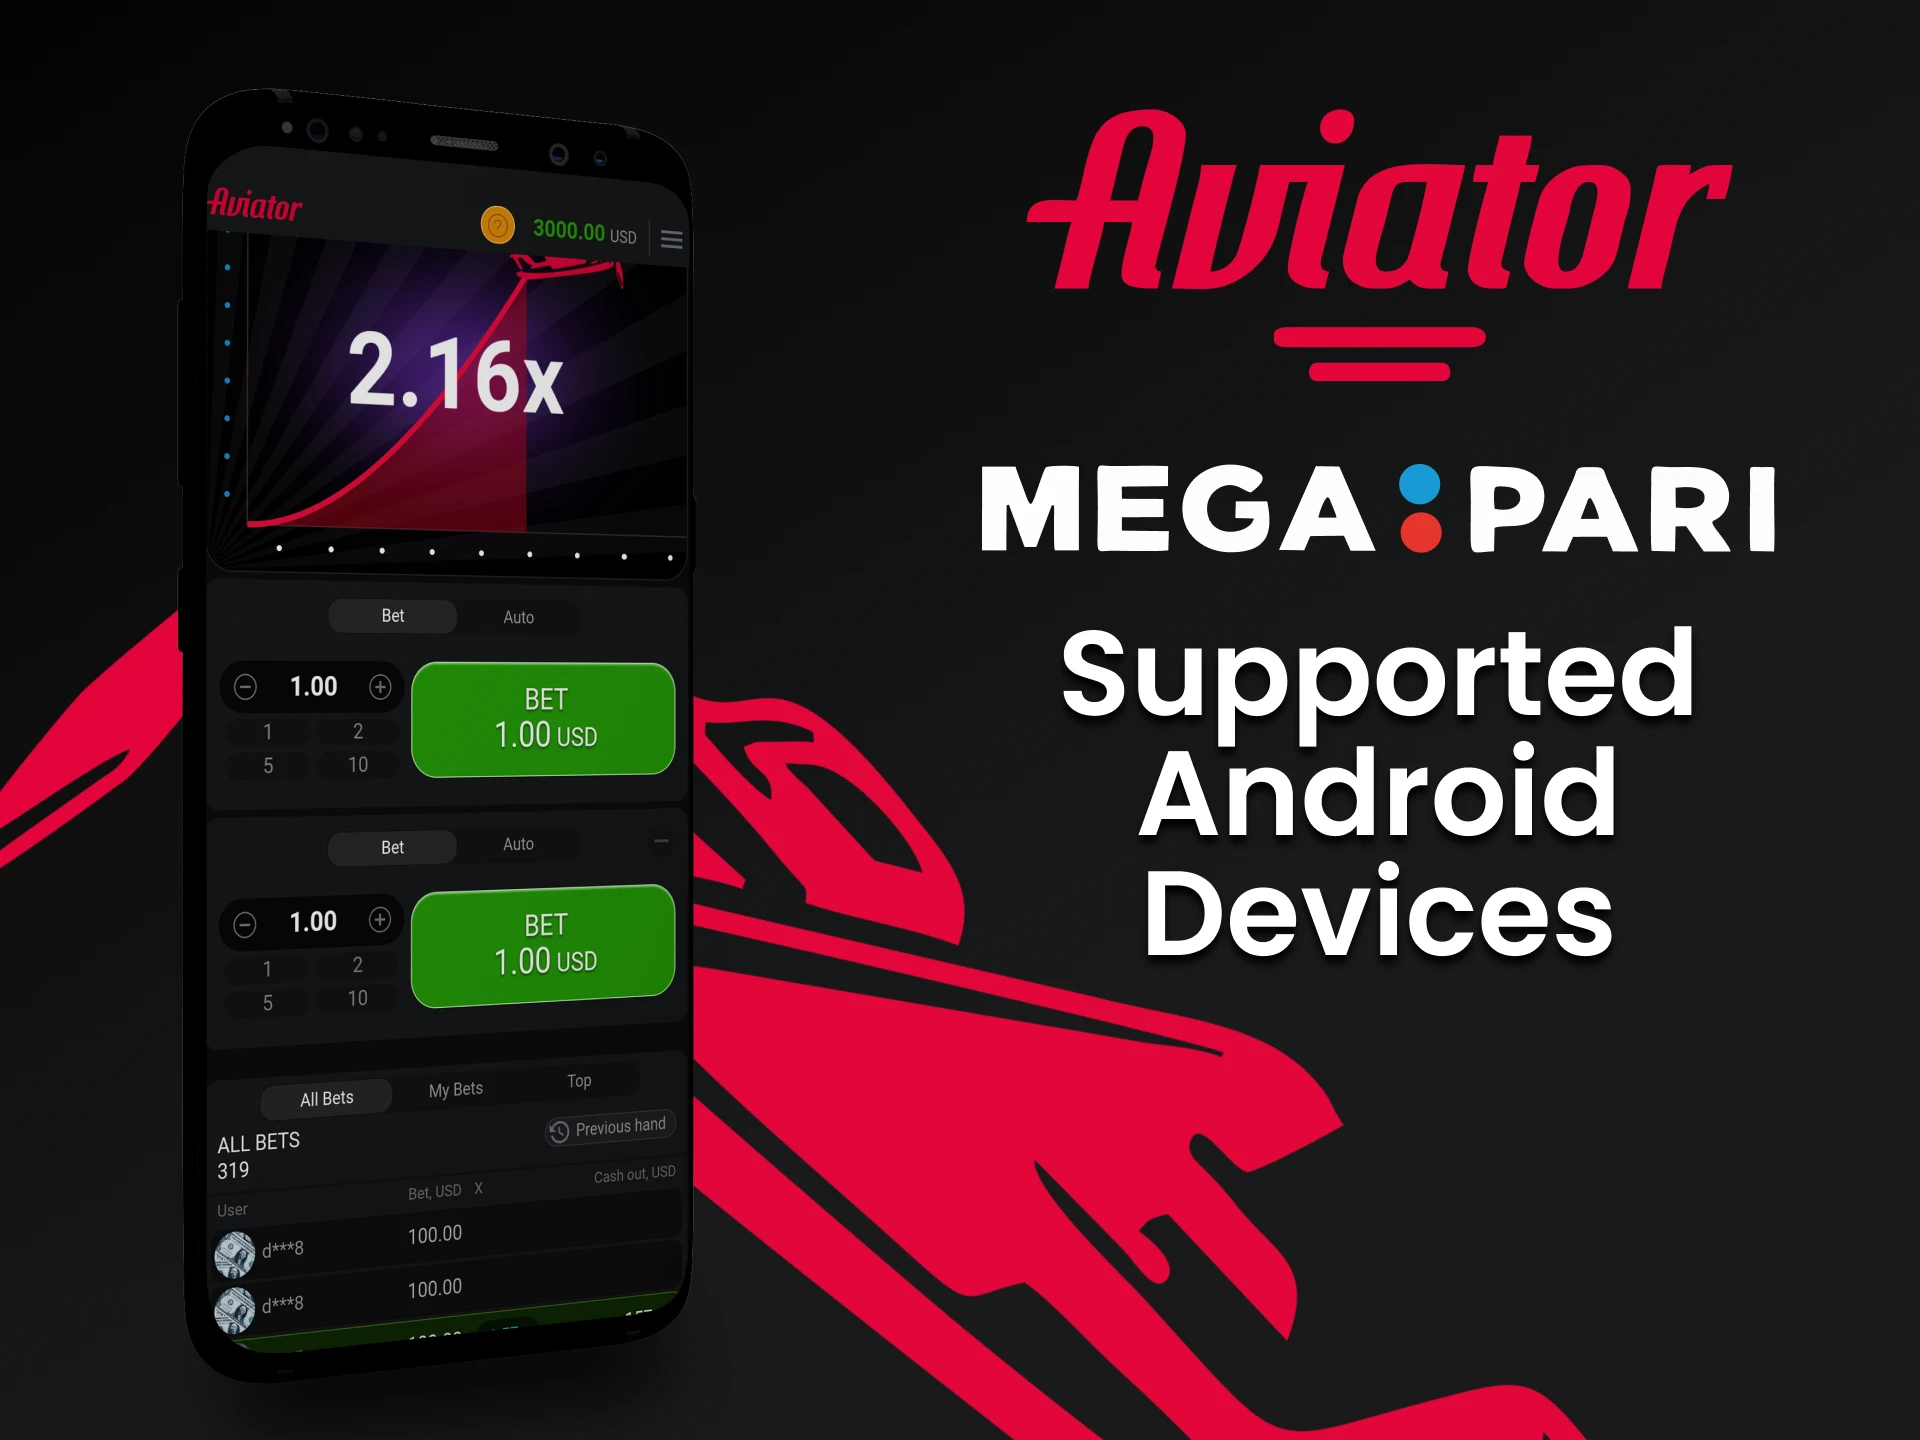 Para jogar Aviator, use o aplicativo Megapari para Android.